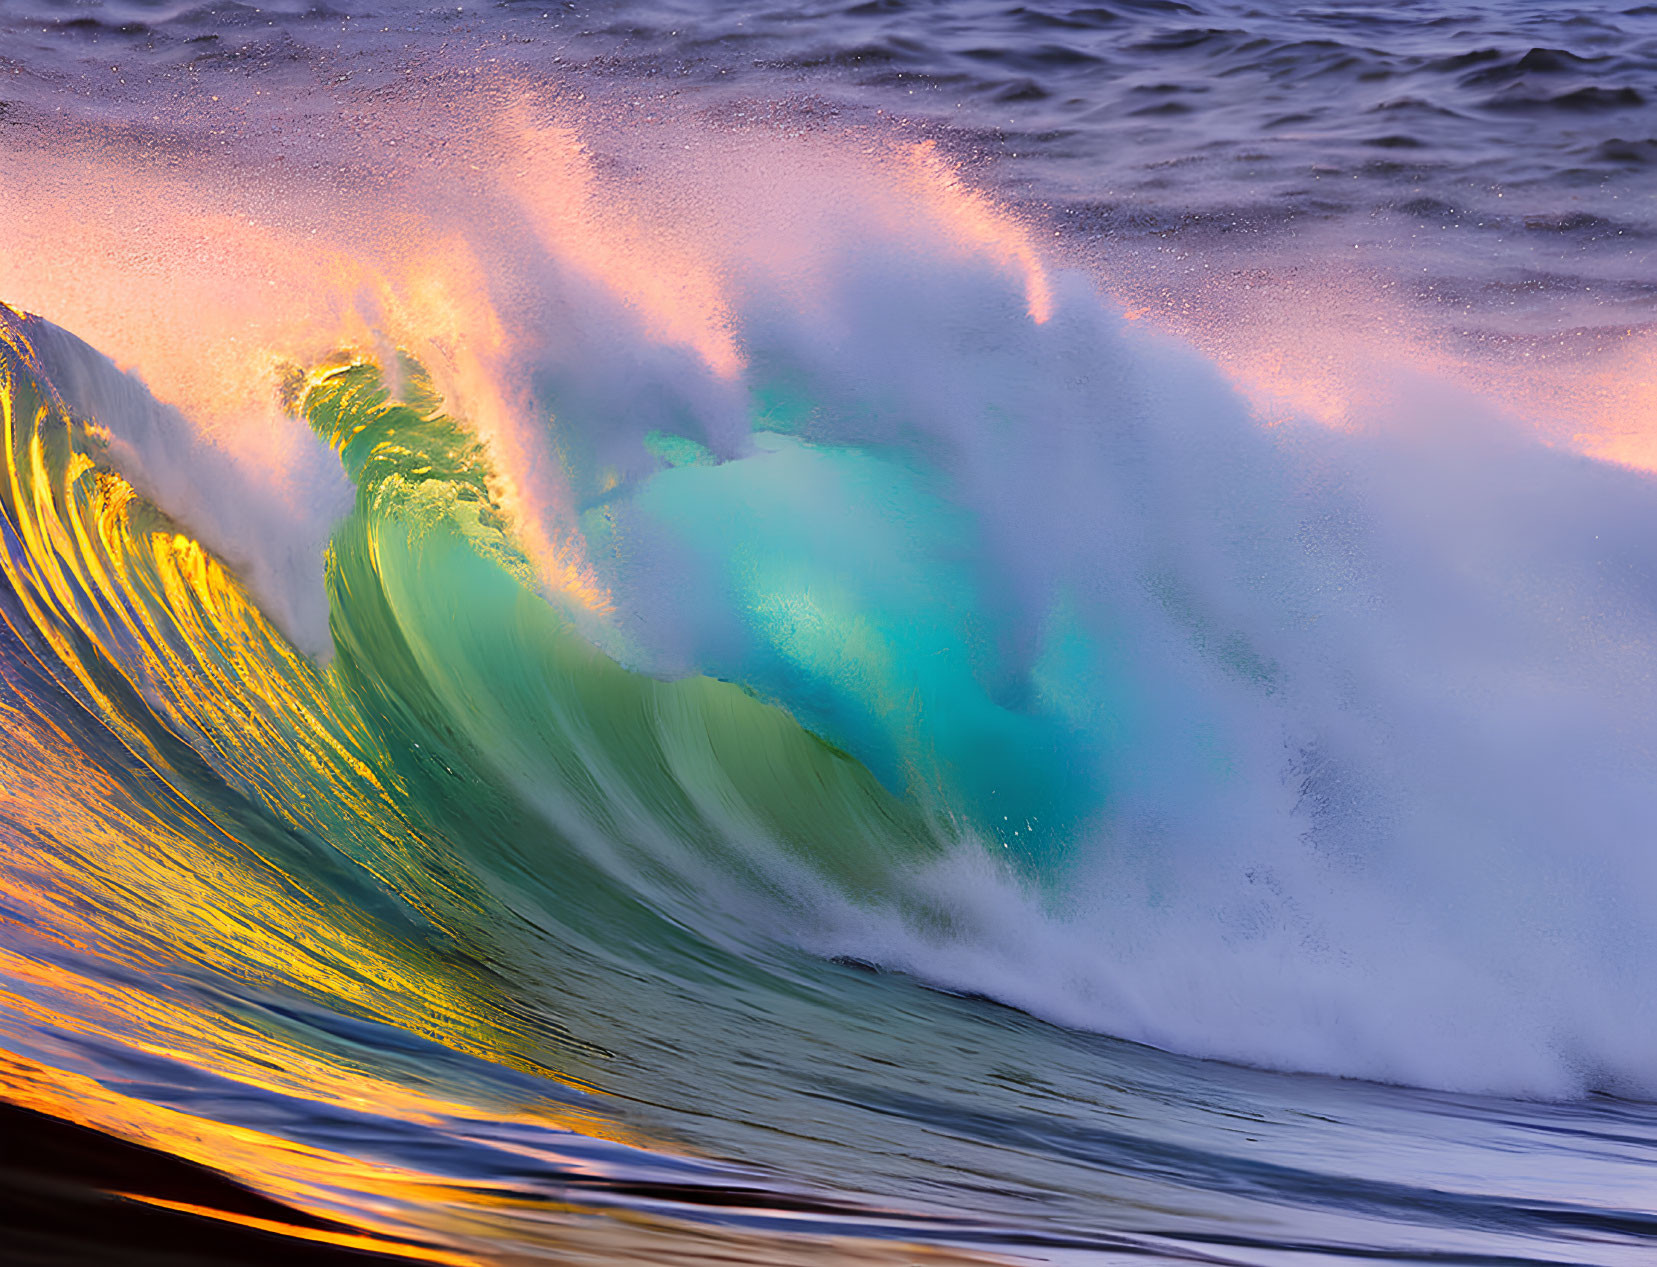 Vibrant ocean wave mid-break with sunlight and aqua hues